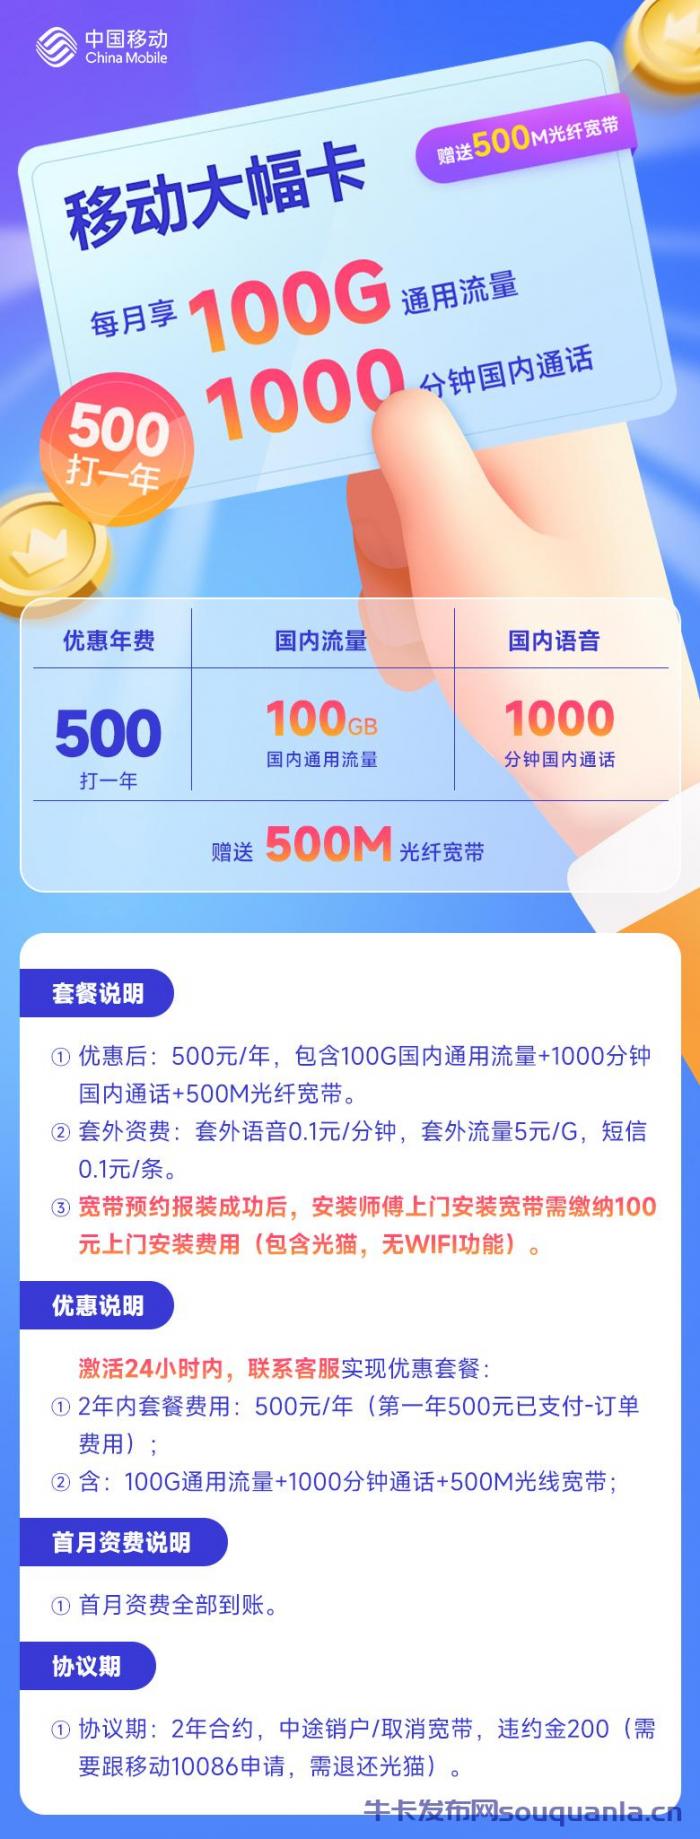 北京移动大幅卡 500打一年100G通用流量+1000分钟+500M宽带